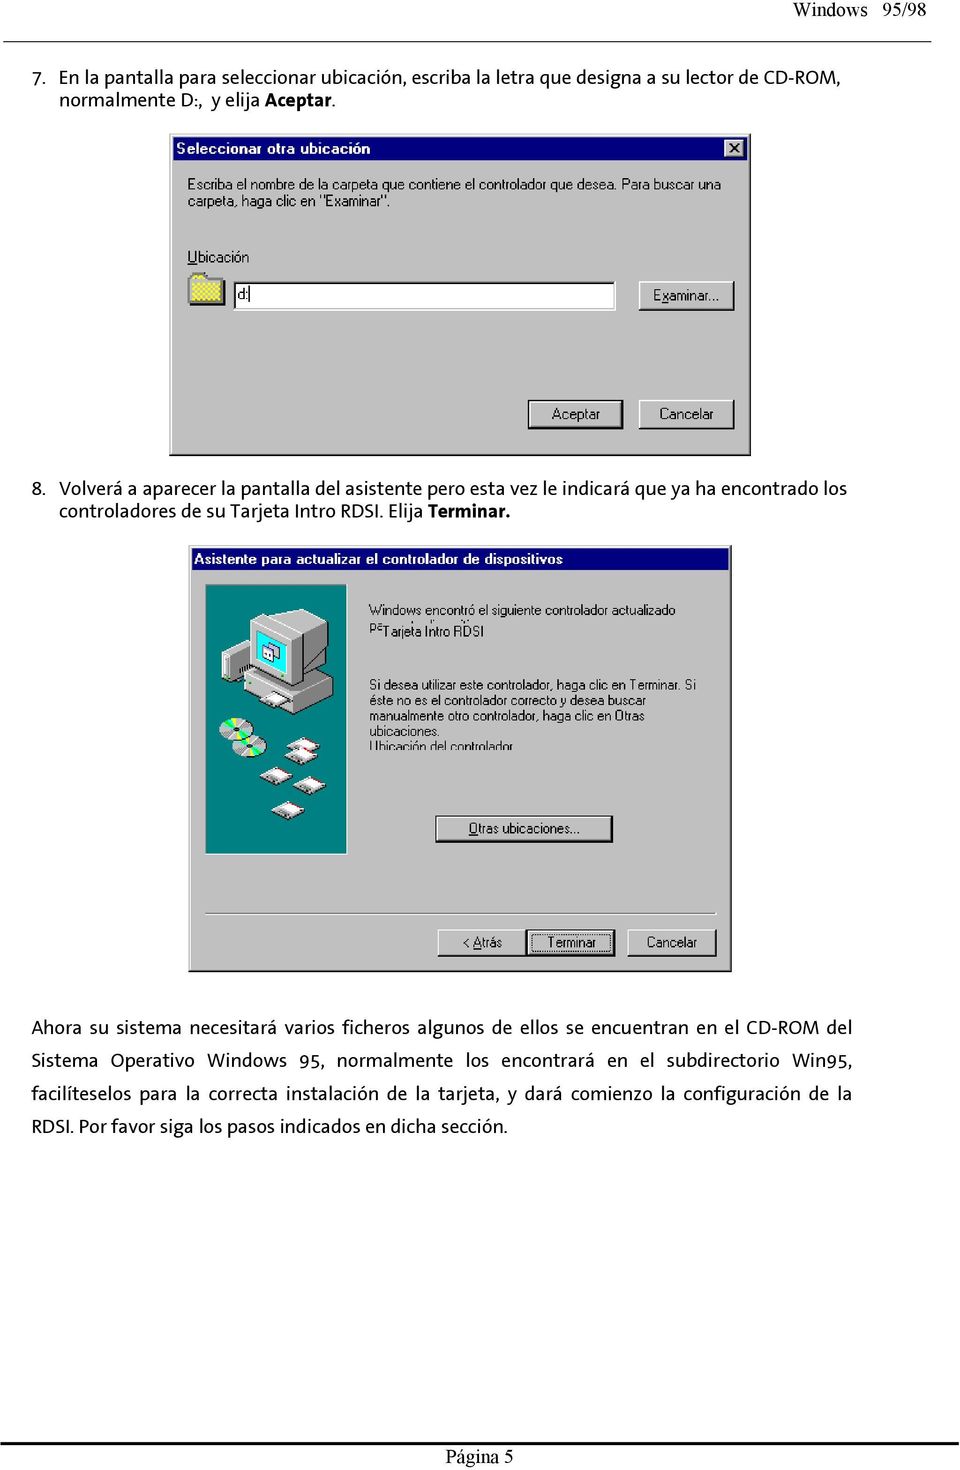 Ahora su sistema necesitará varios ficheros algunos de ellos se encuentran en el CD-ROM del Sistema Operativo Windows 95, normalmente los encontrará en el